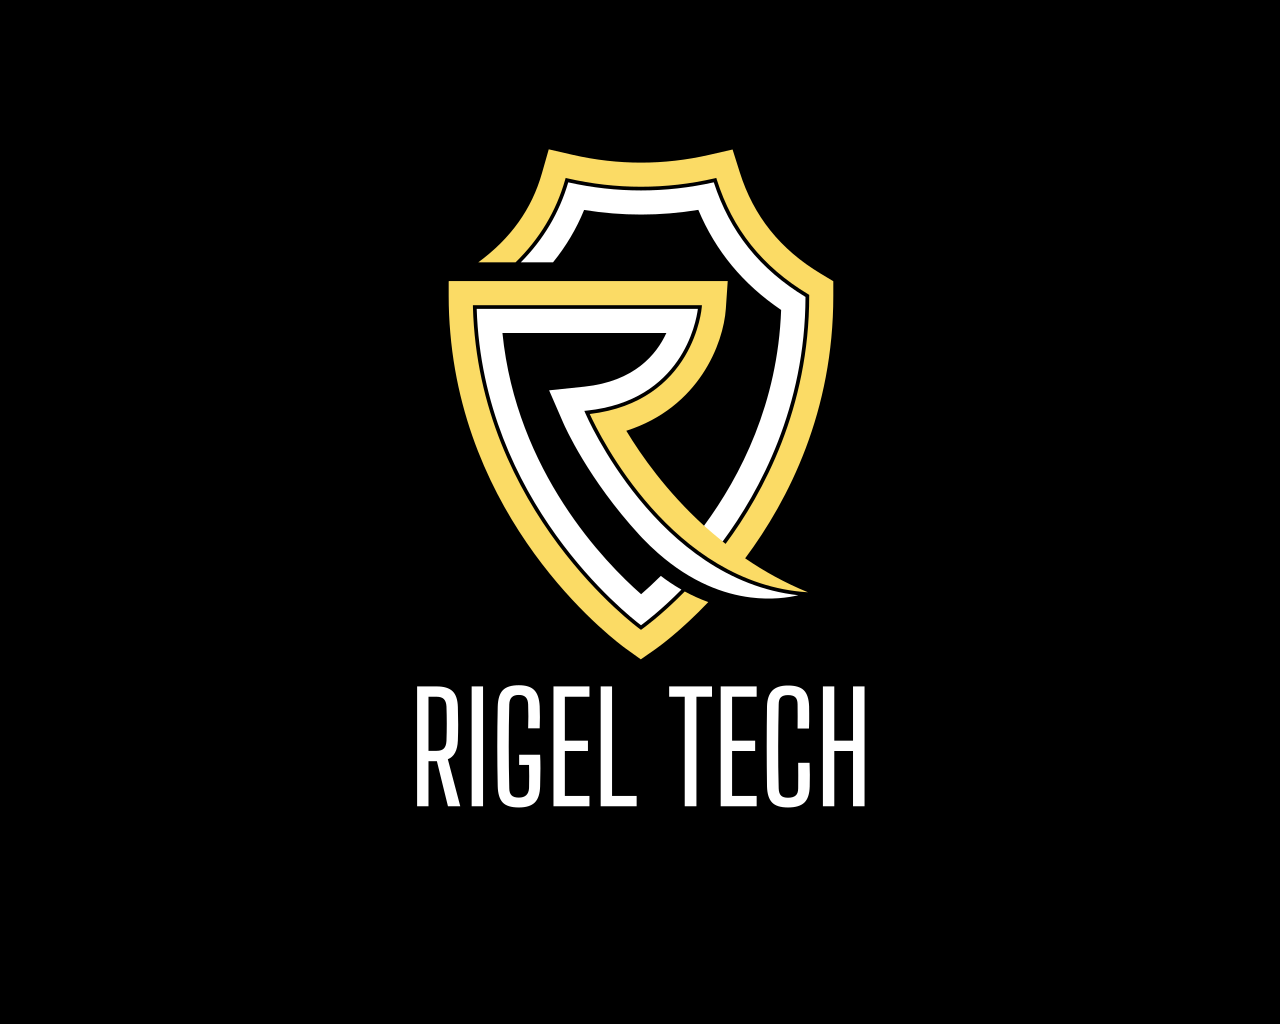 RigelTech